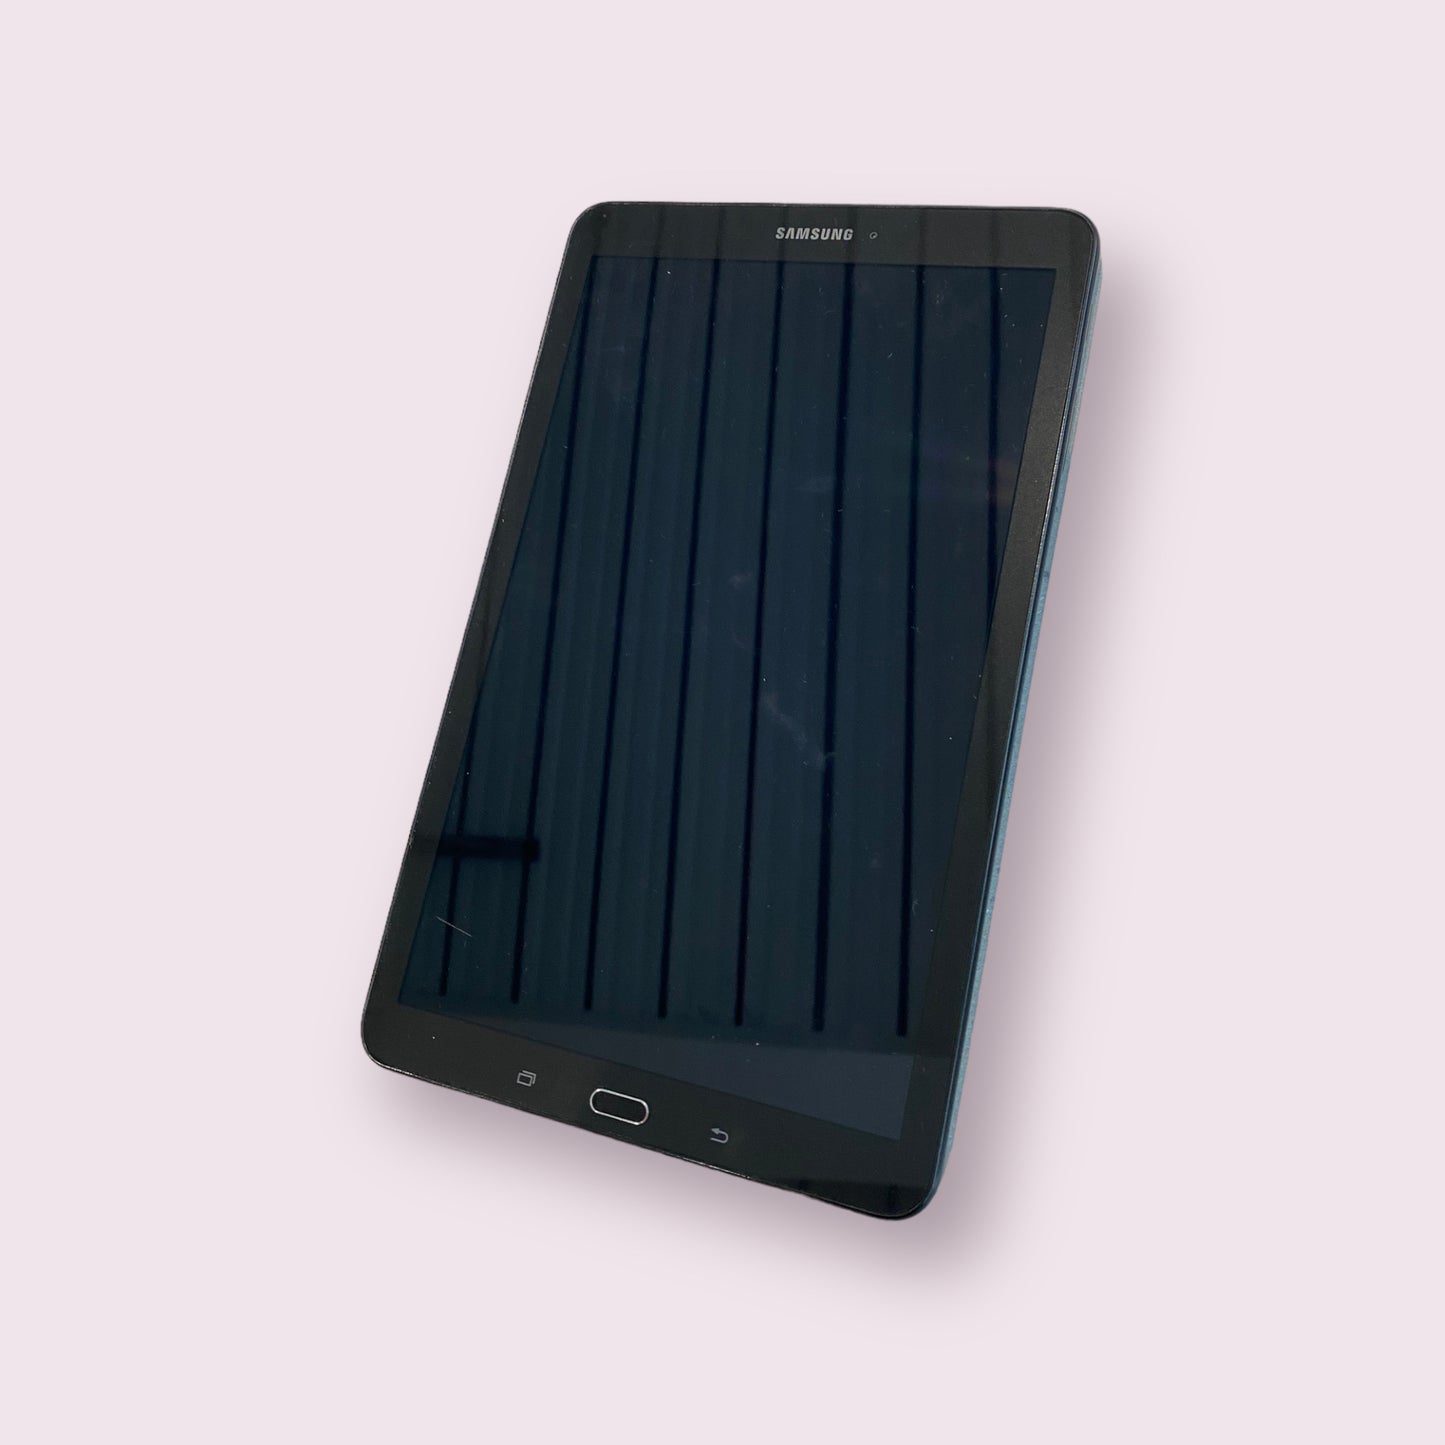 Samsung Galaxy TAB E 9.6 8GB SM-T560 2015 black Tablet - WIFI - Grade B